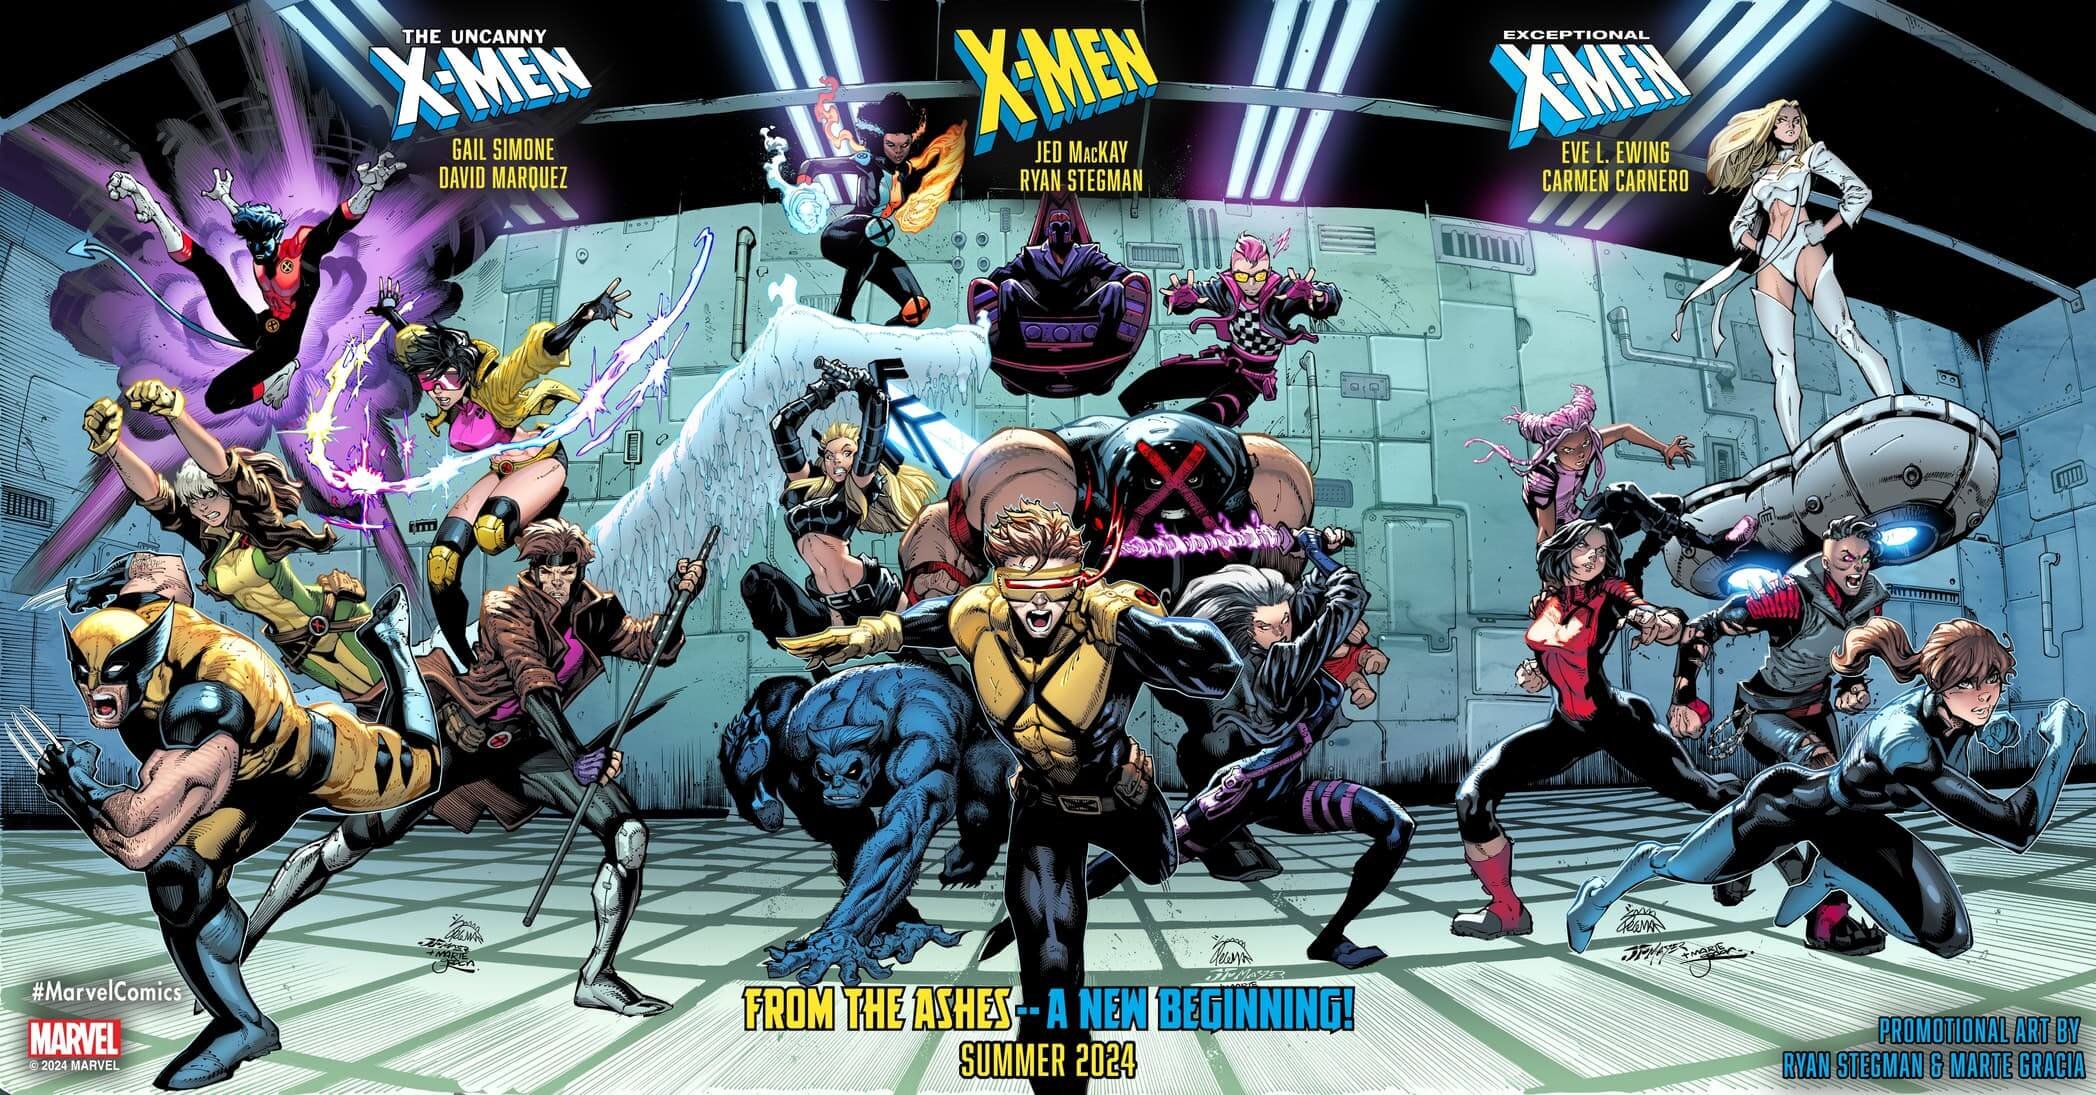 Immagine promozionale delle nuove seried degli X-Men di Ryan Stegman